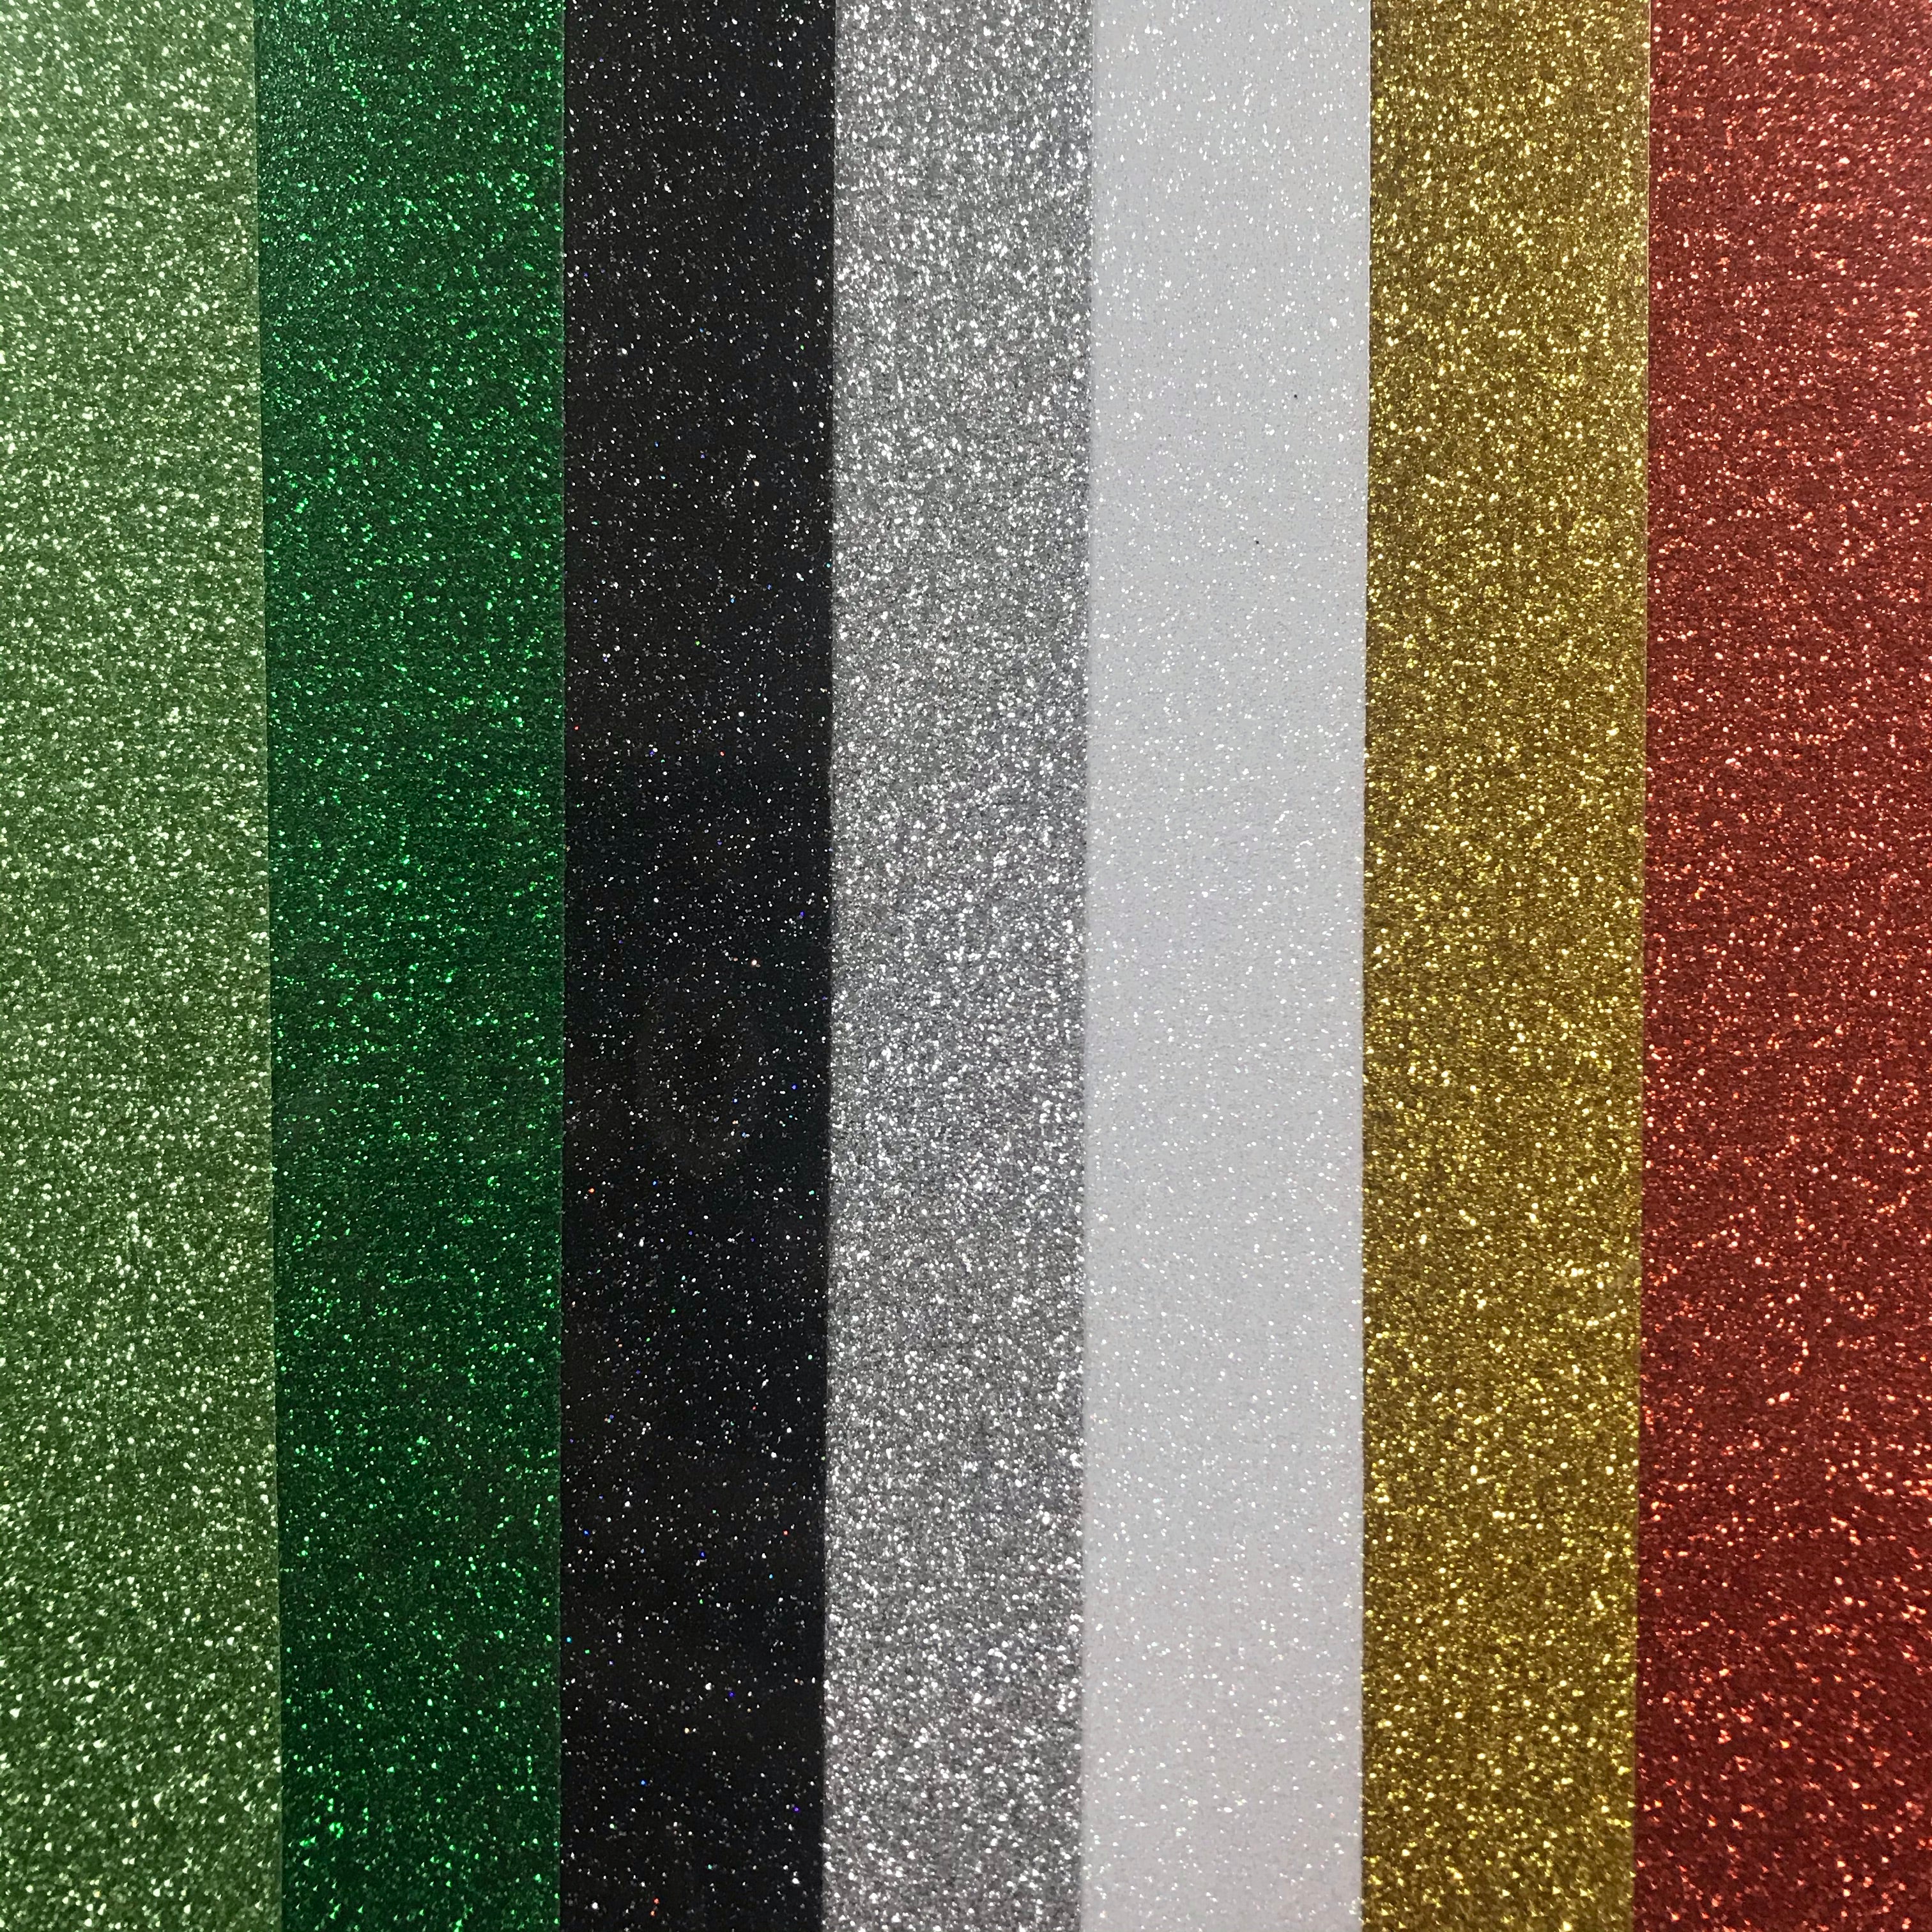 12 Confetti Siser Glitter Heat Transfer Vinyl (HTV)